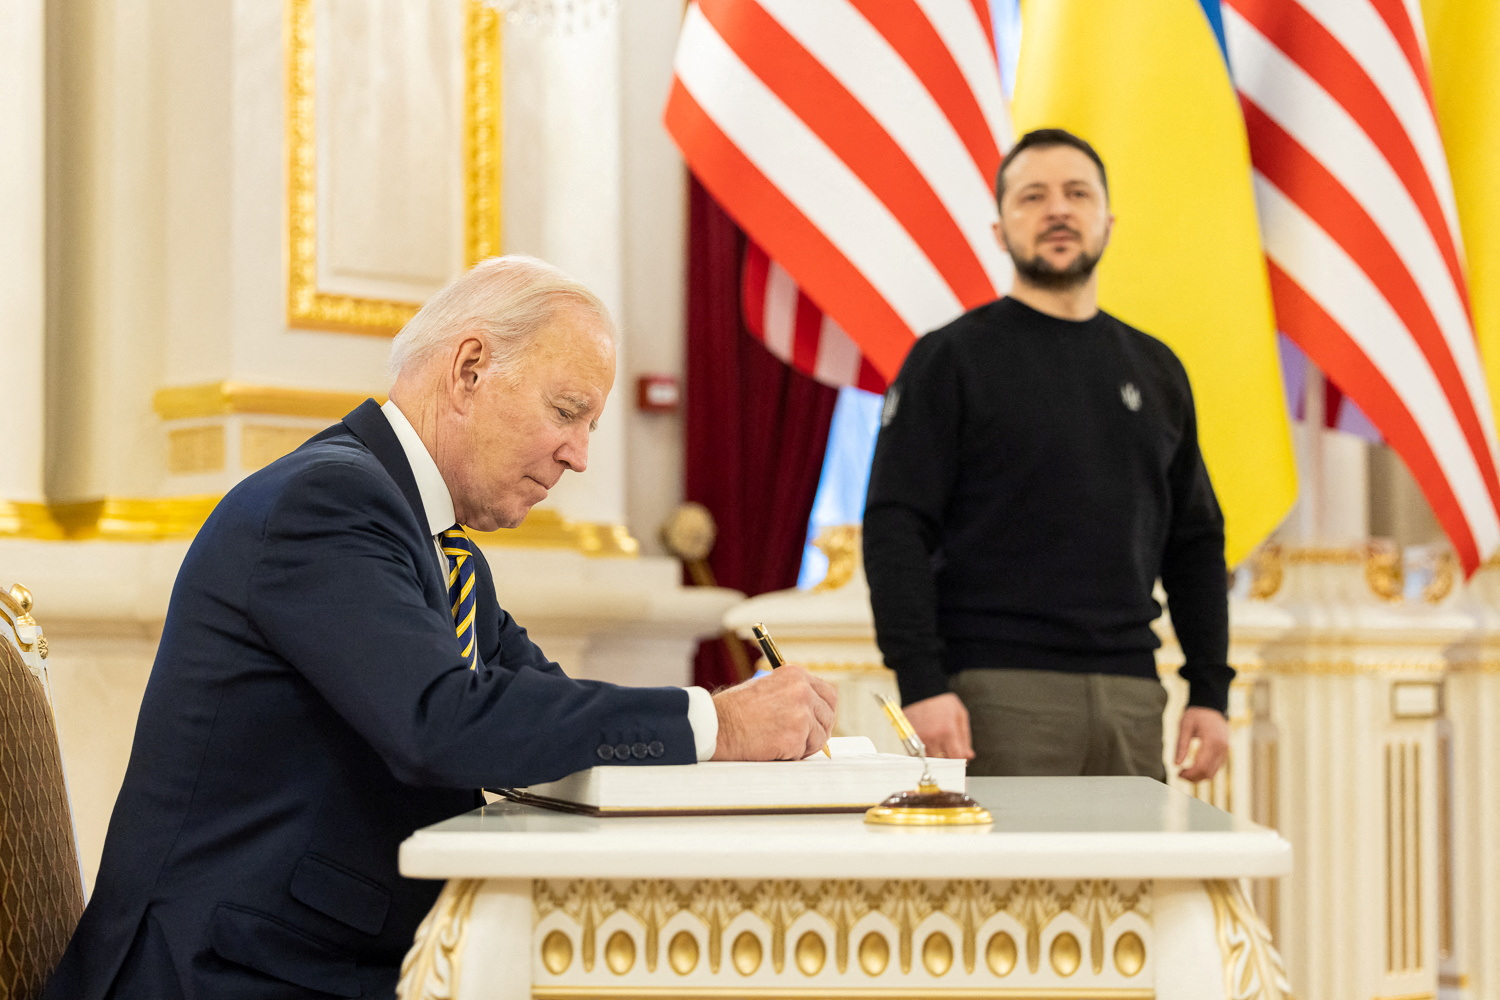 El presidente de los Estados Unidos deja un mensaje en un libro mientras el presidente de Ucrania se encuentra a su lado.
